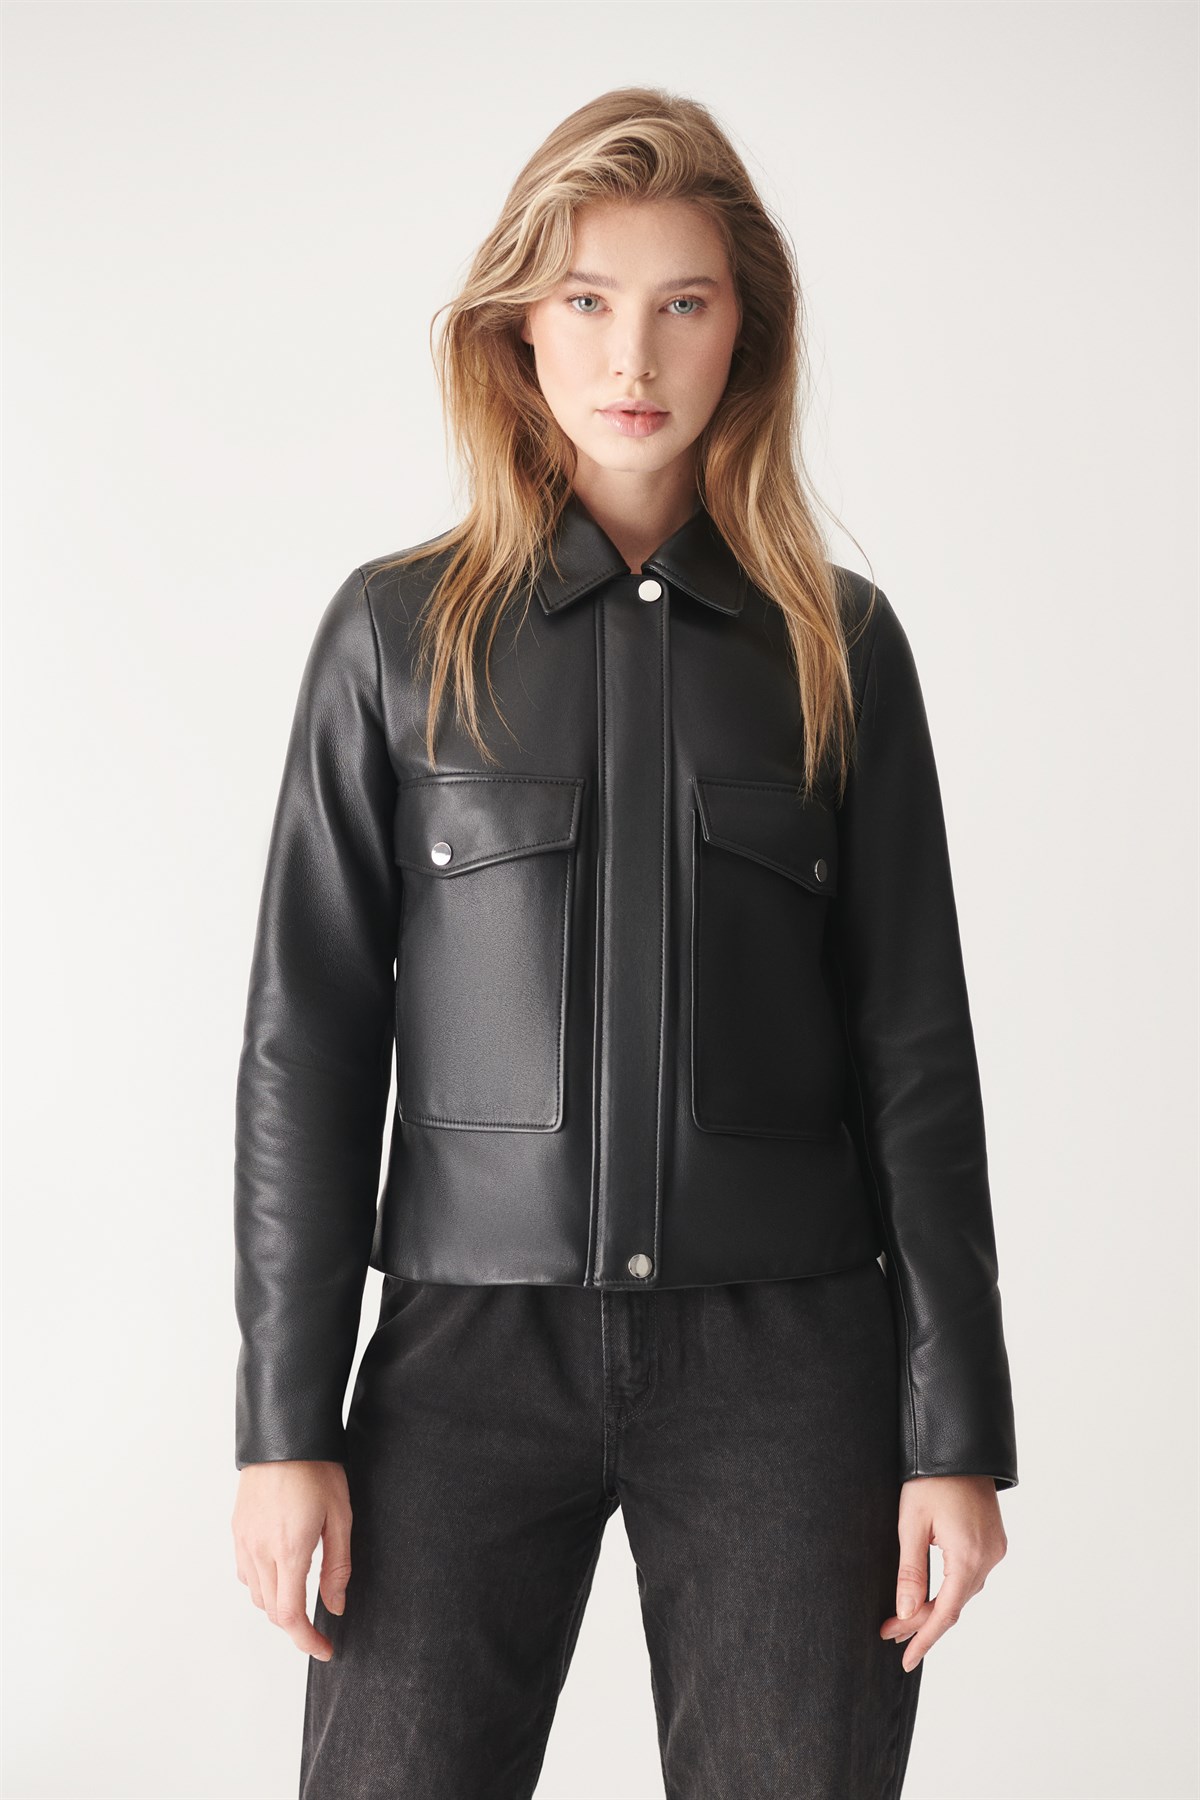 JULIET Black Sport Leather Jacket | Women's Leather Jacket Models